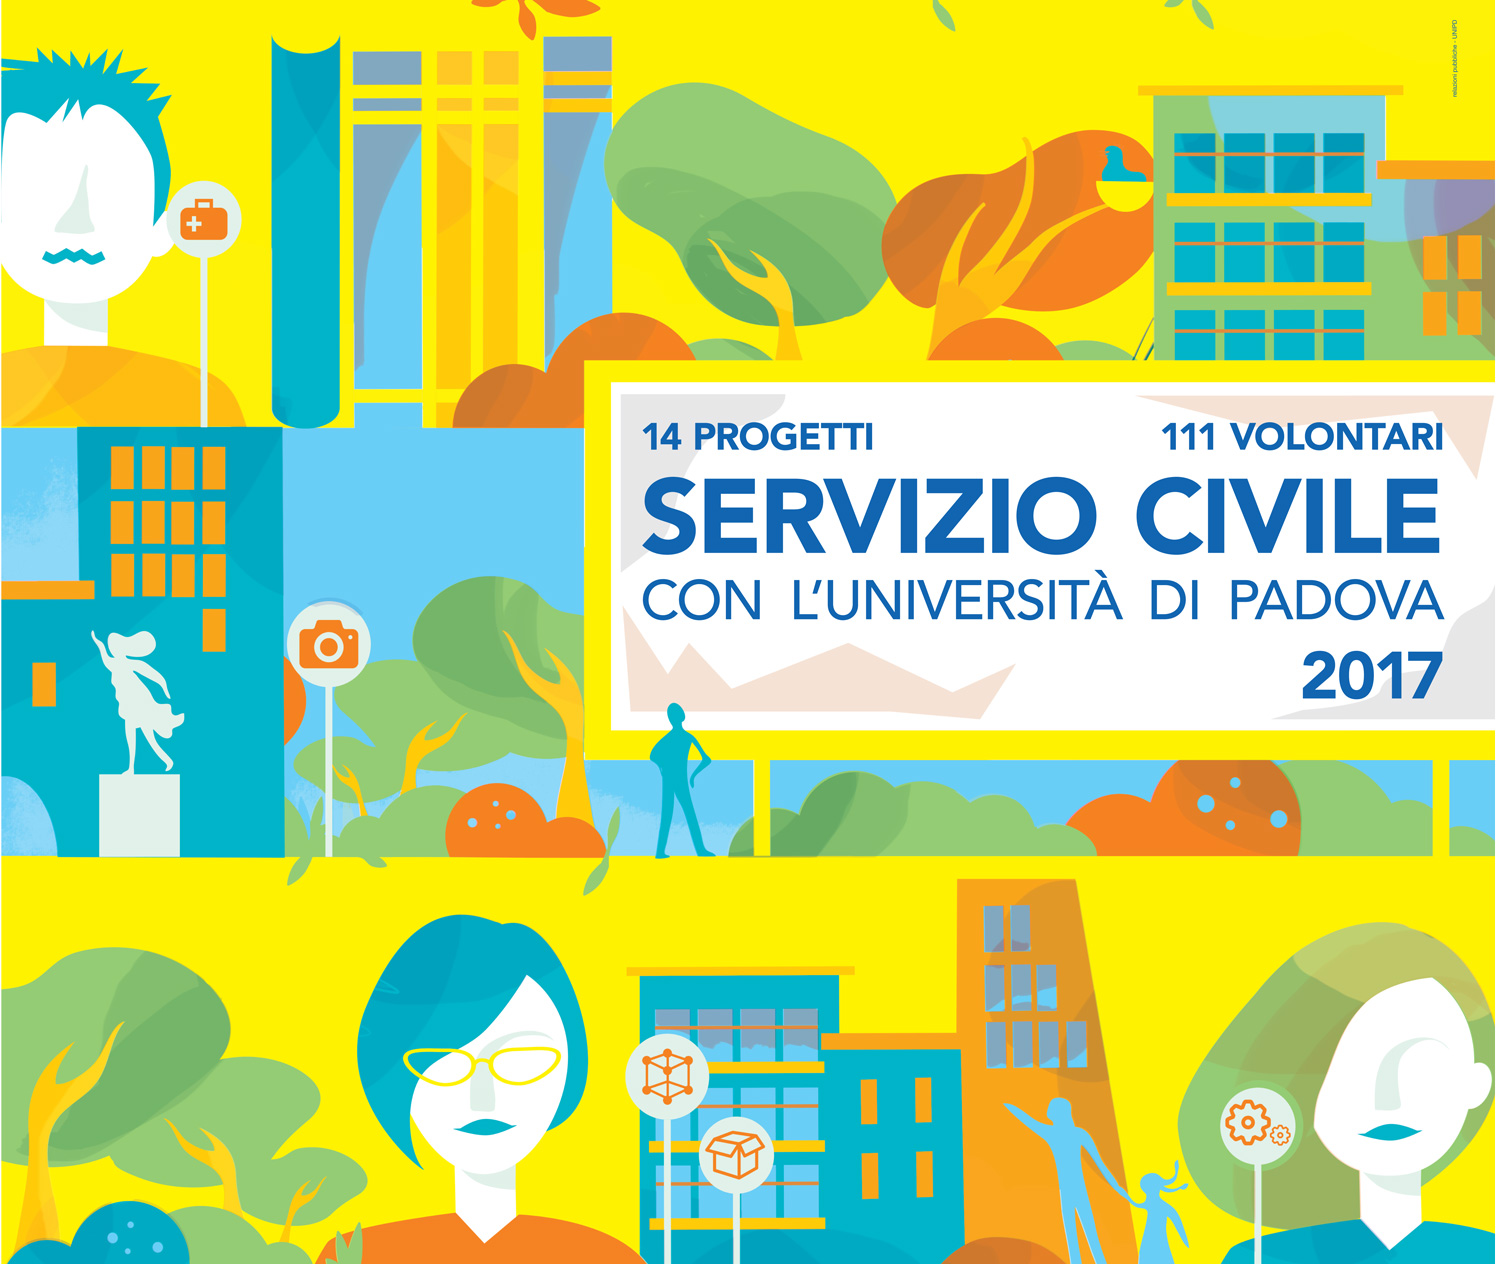 Servizio civile con l'Università di Padova, 2017